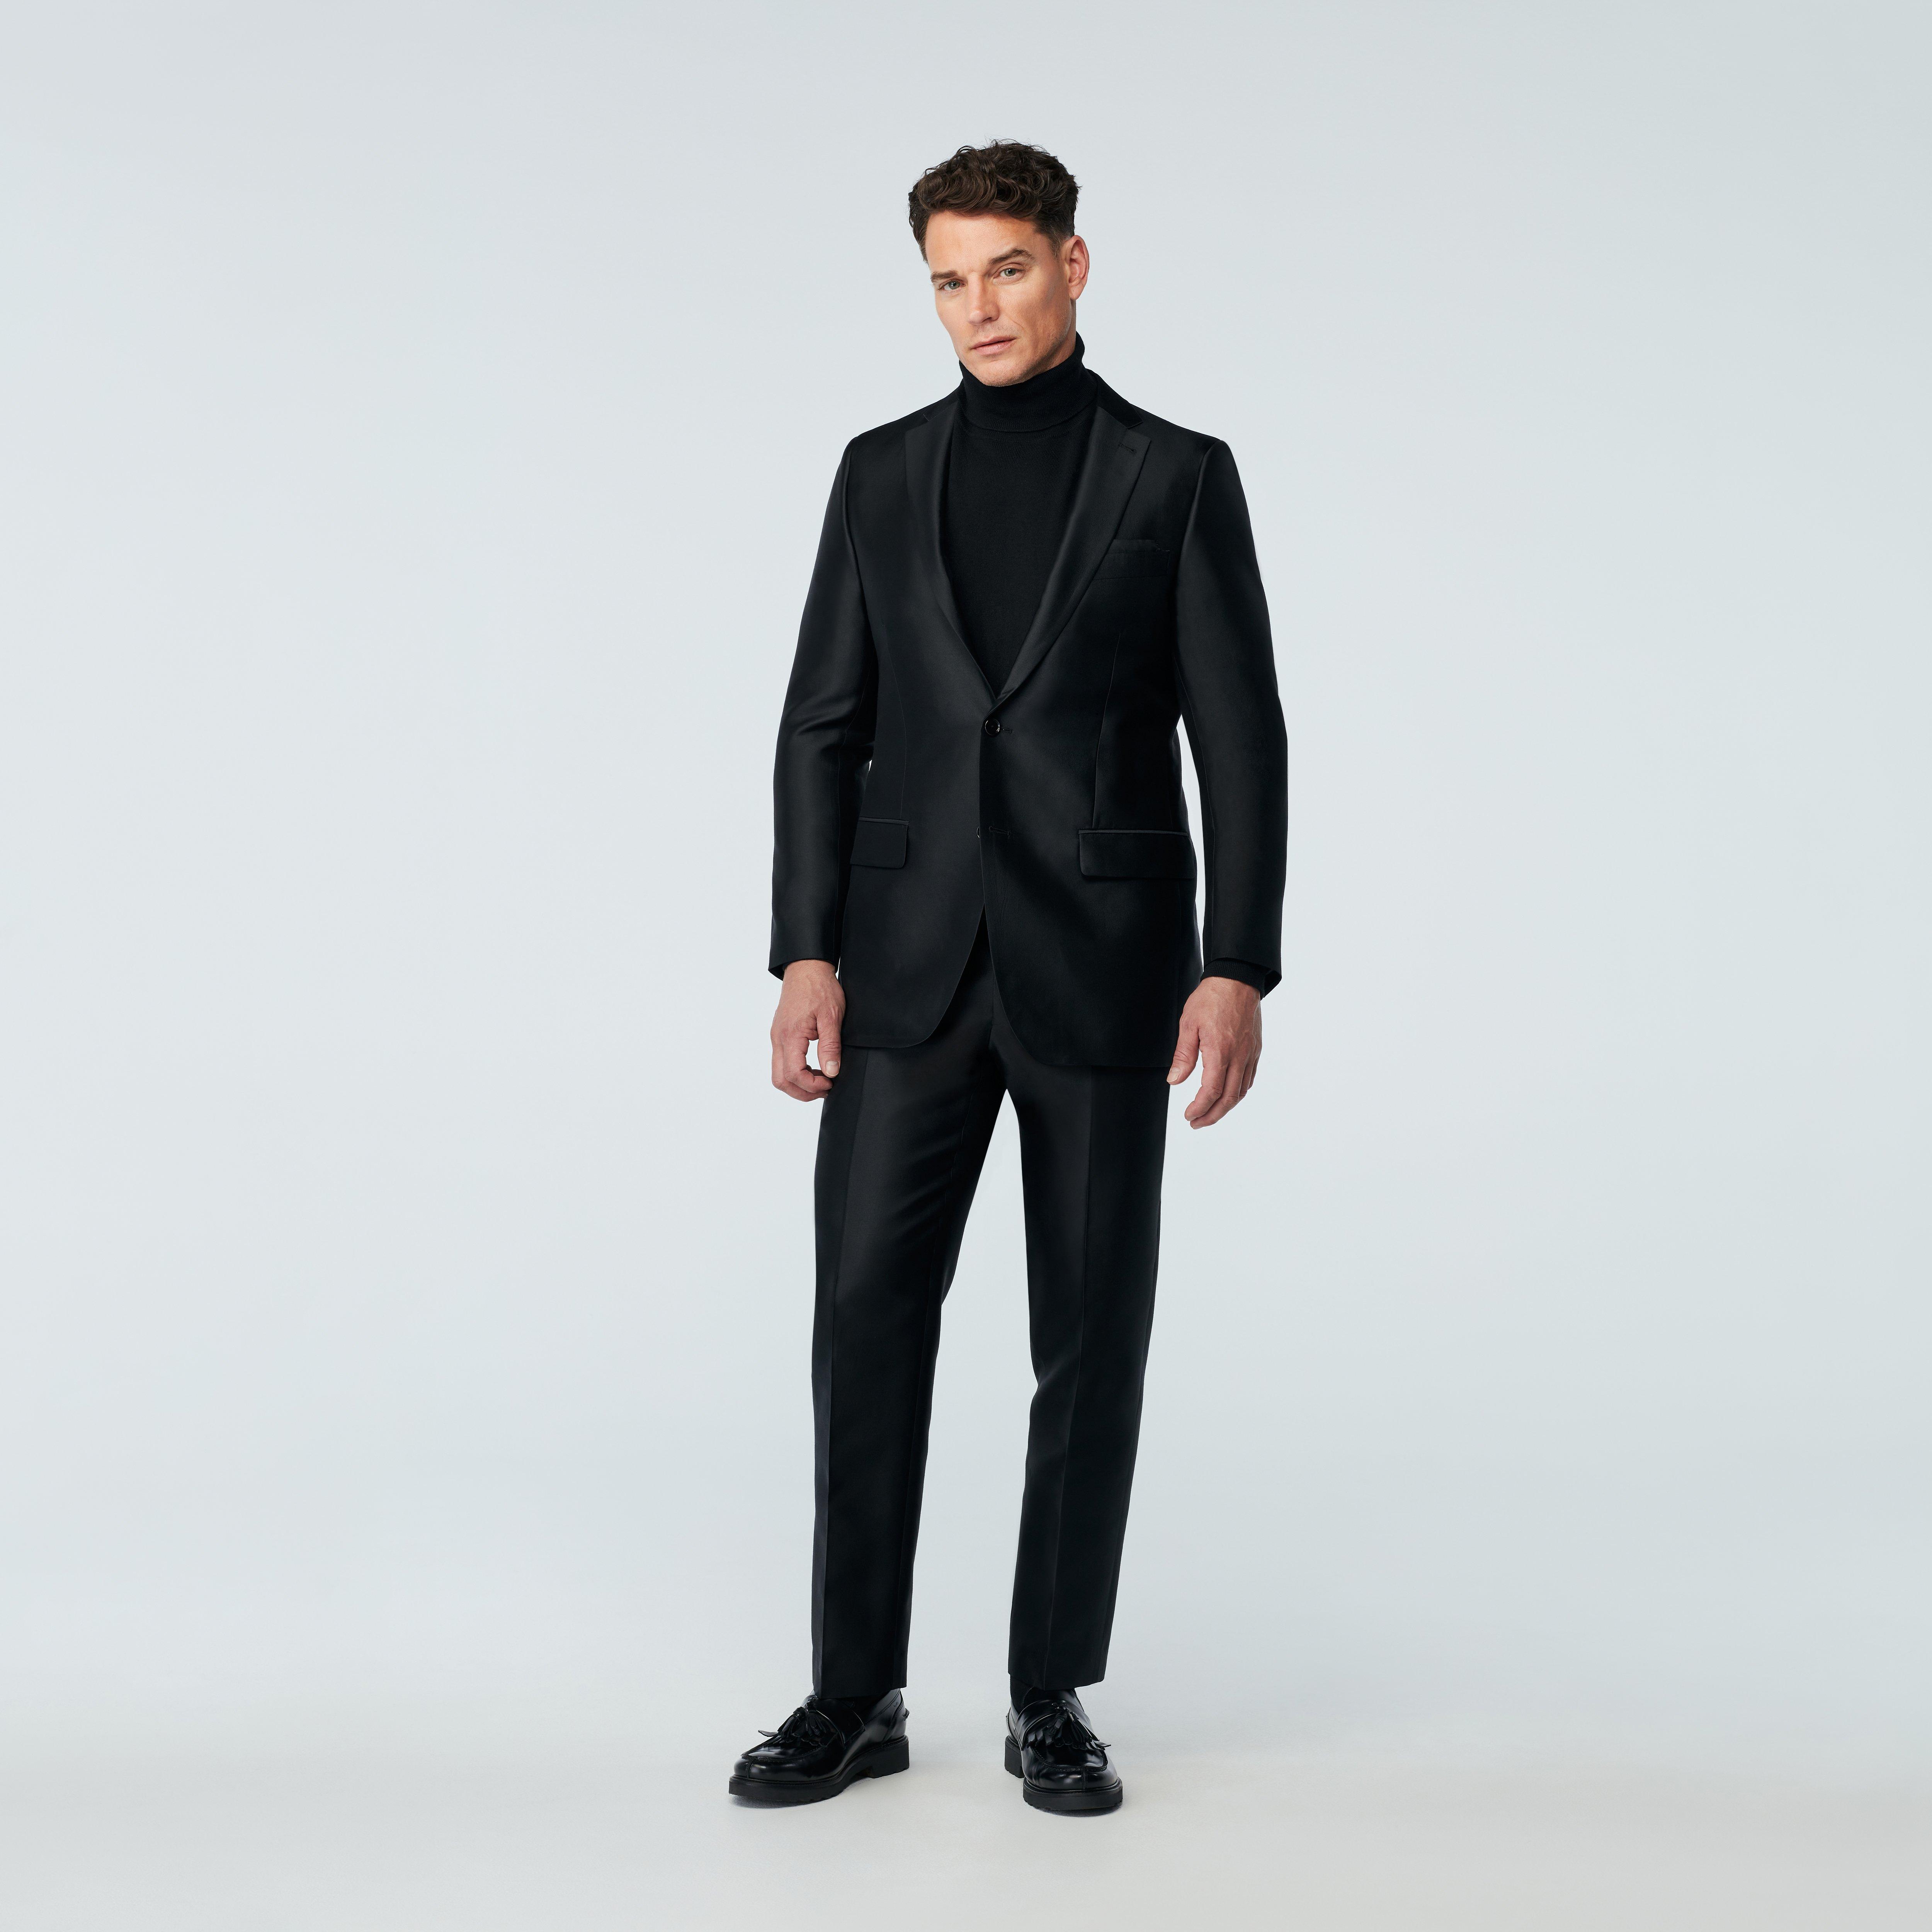 Should You Buy a Black Suit?